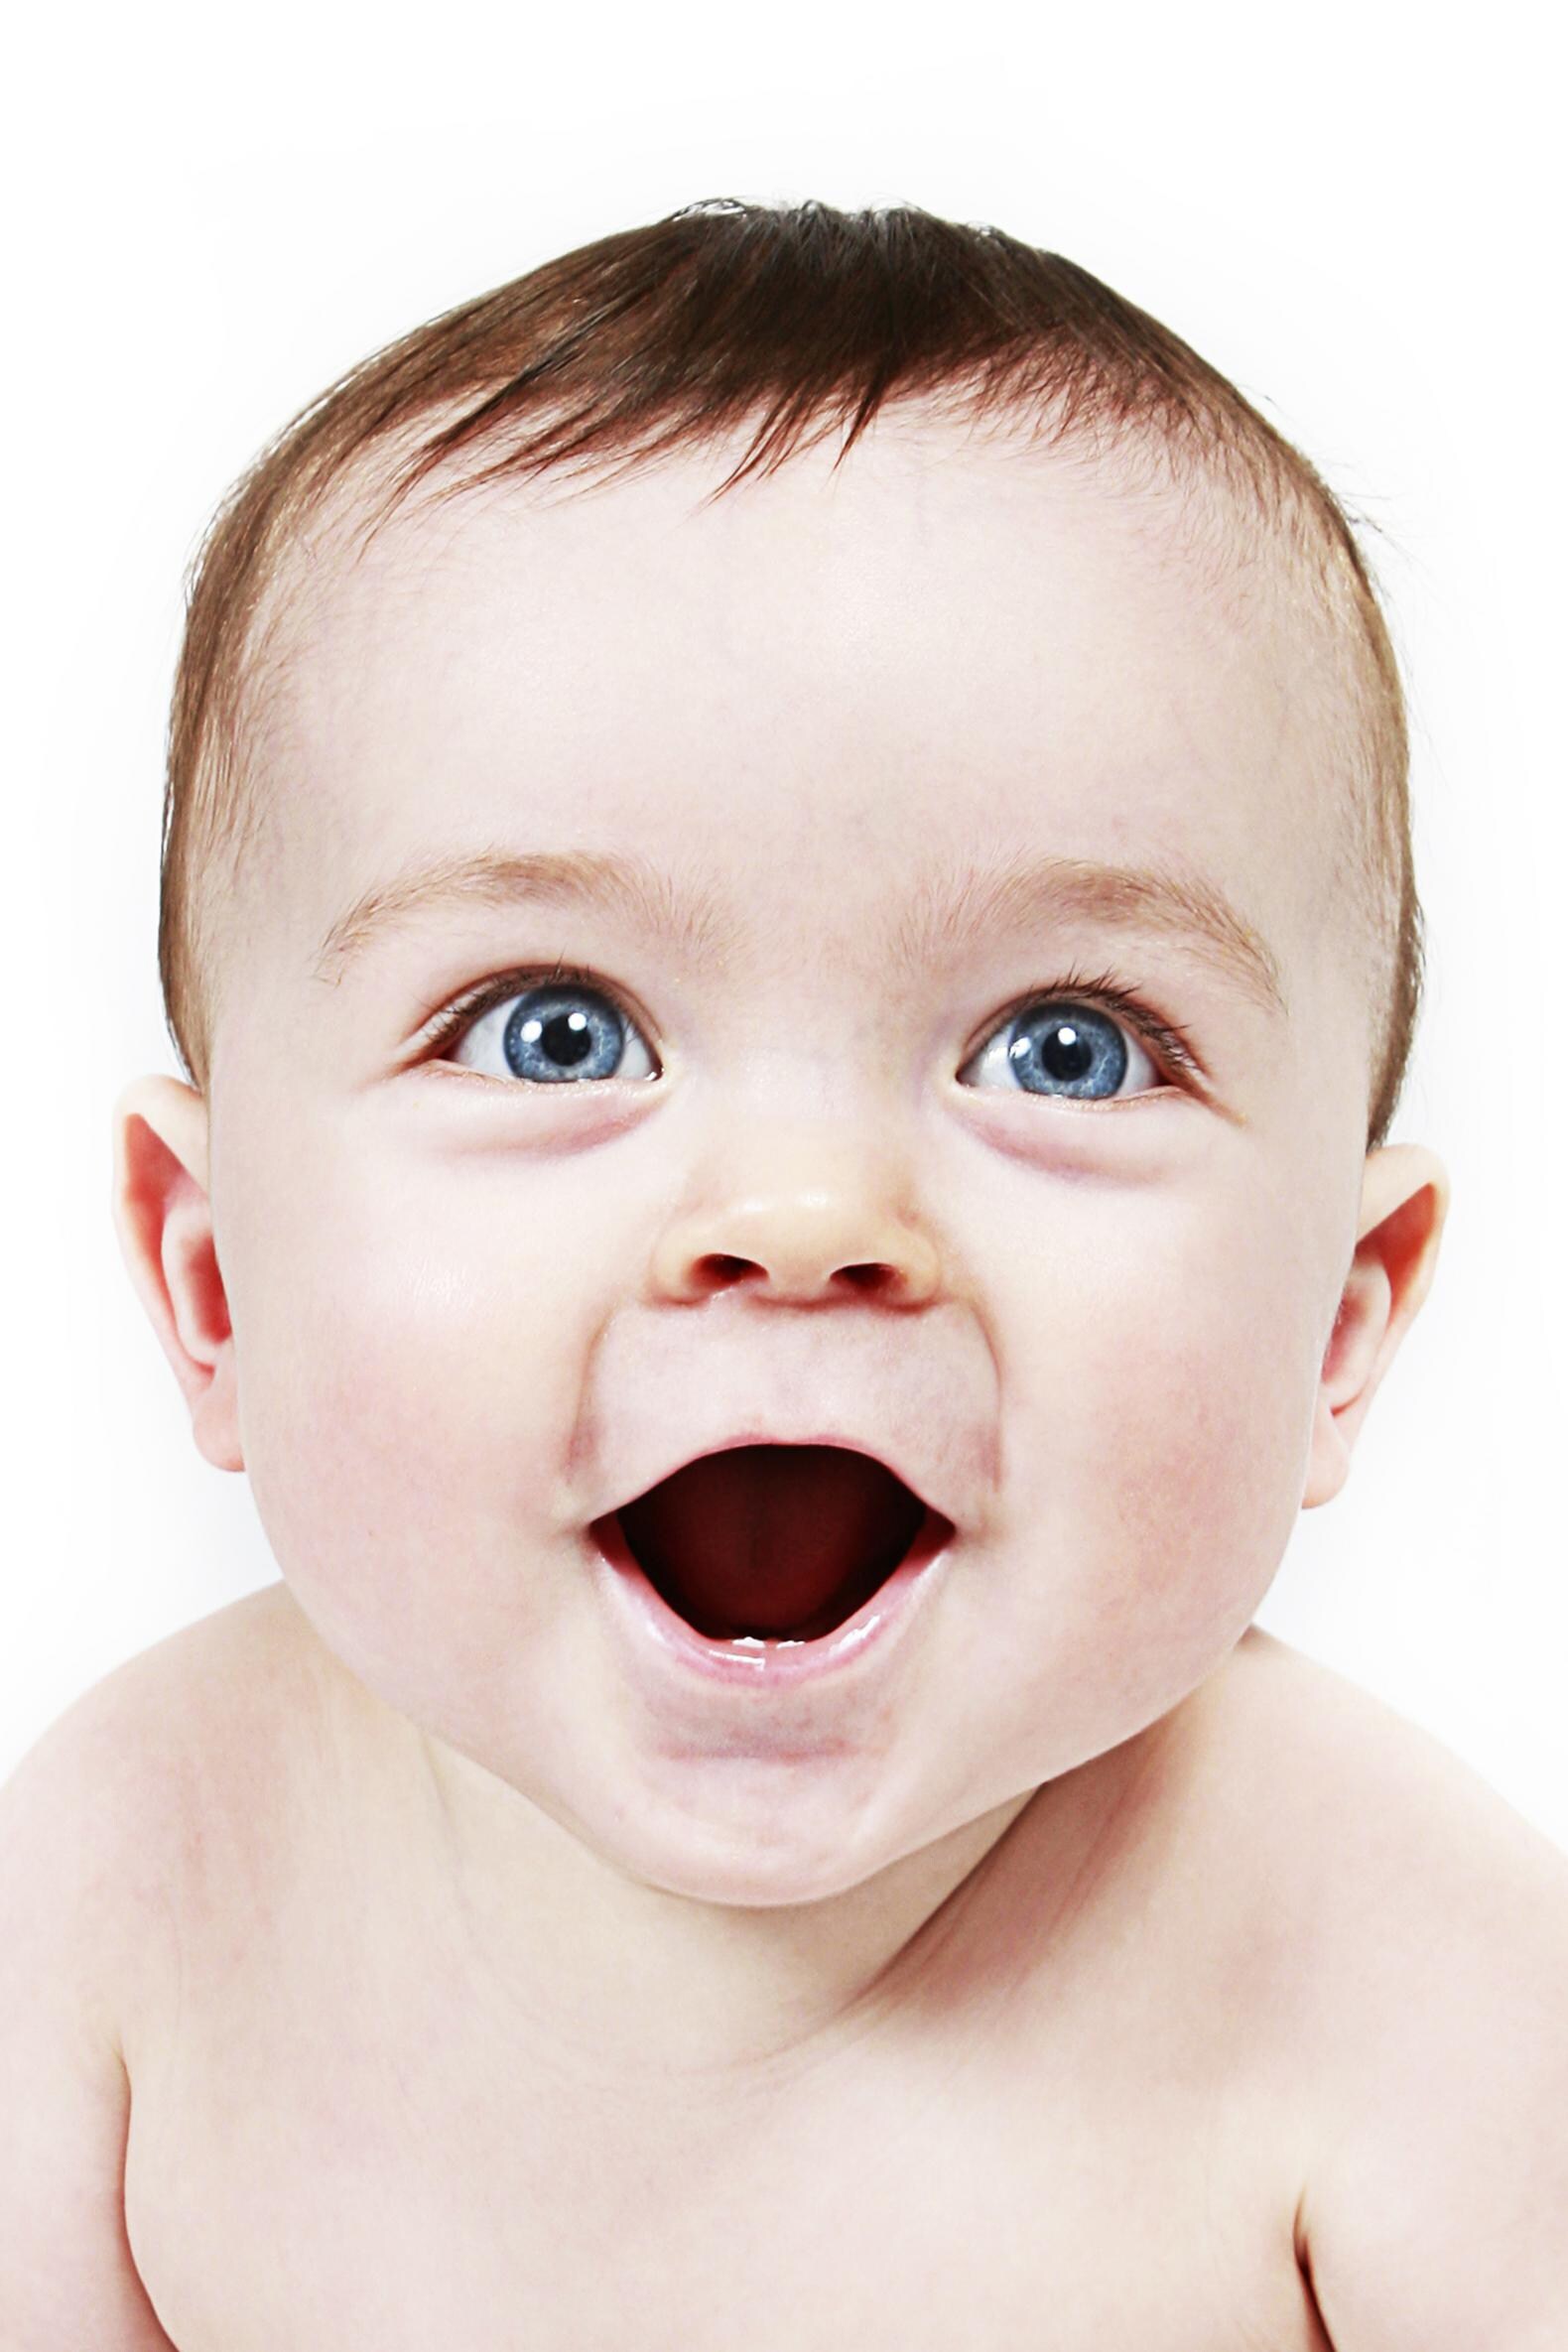 De lach van een baby lijkt op die van een chimpansee